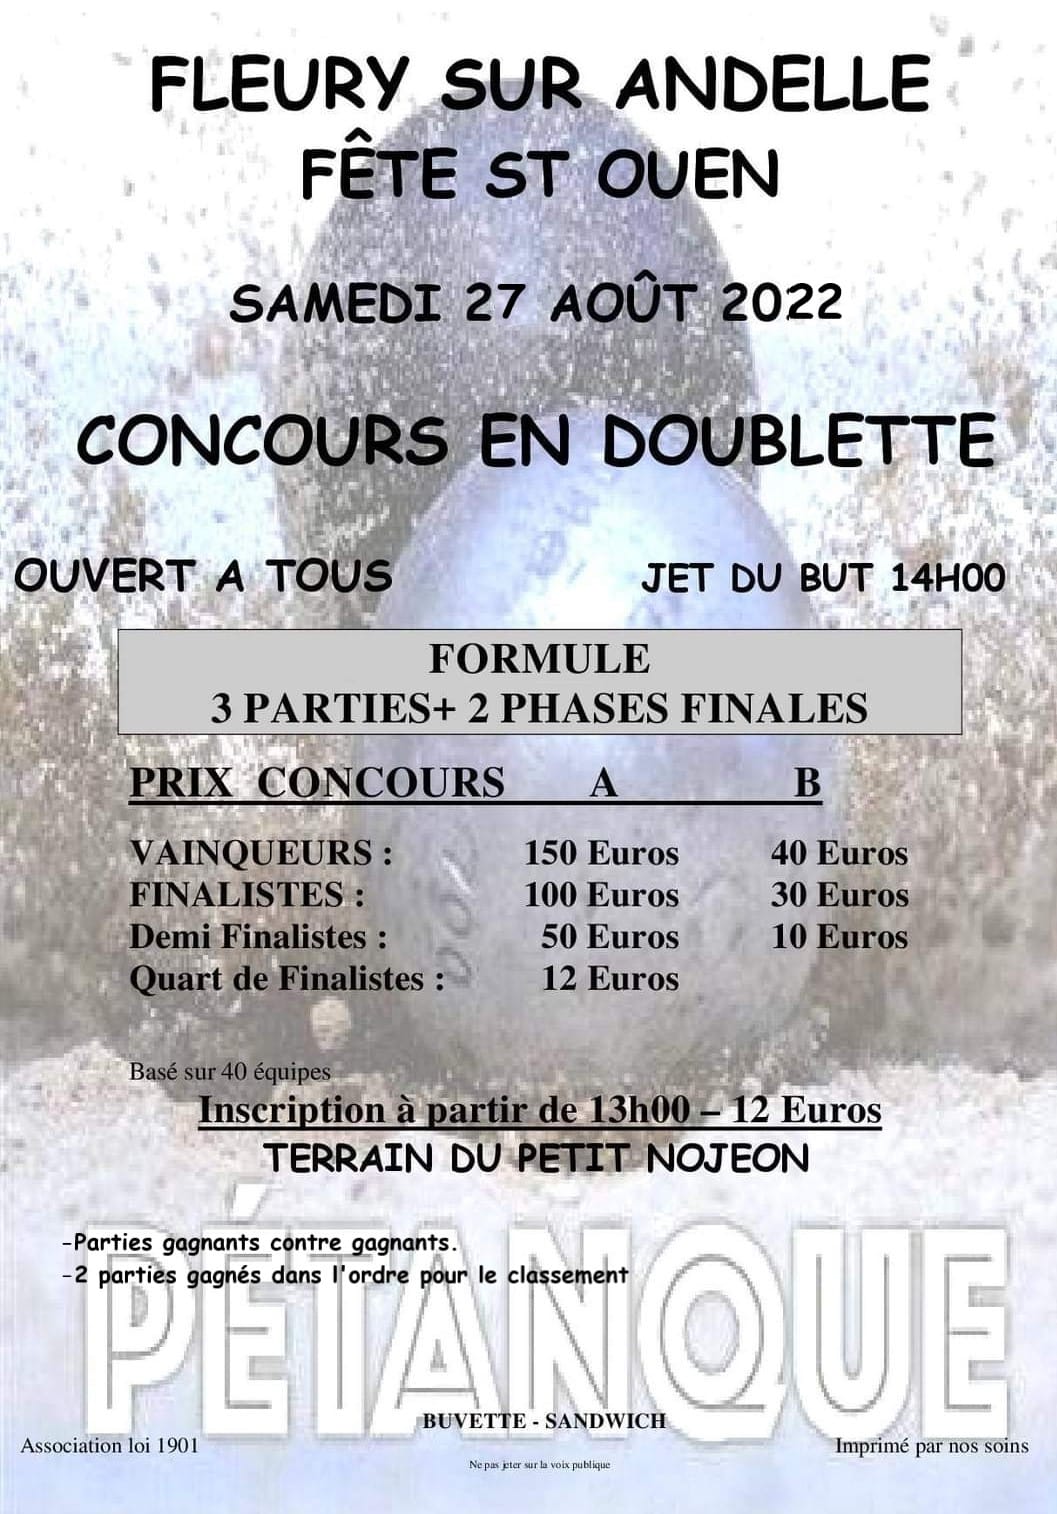 Concours de la fêtes de Fleury 28/08/2022